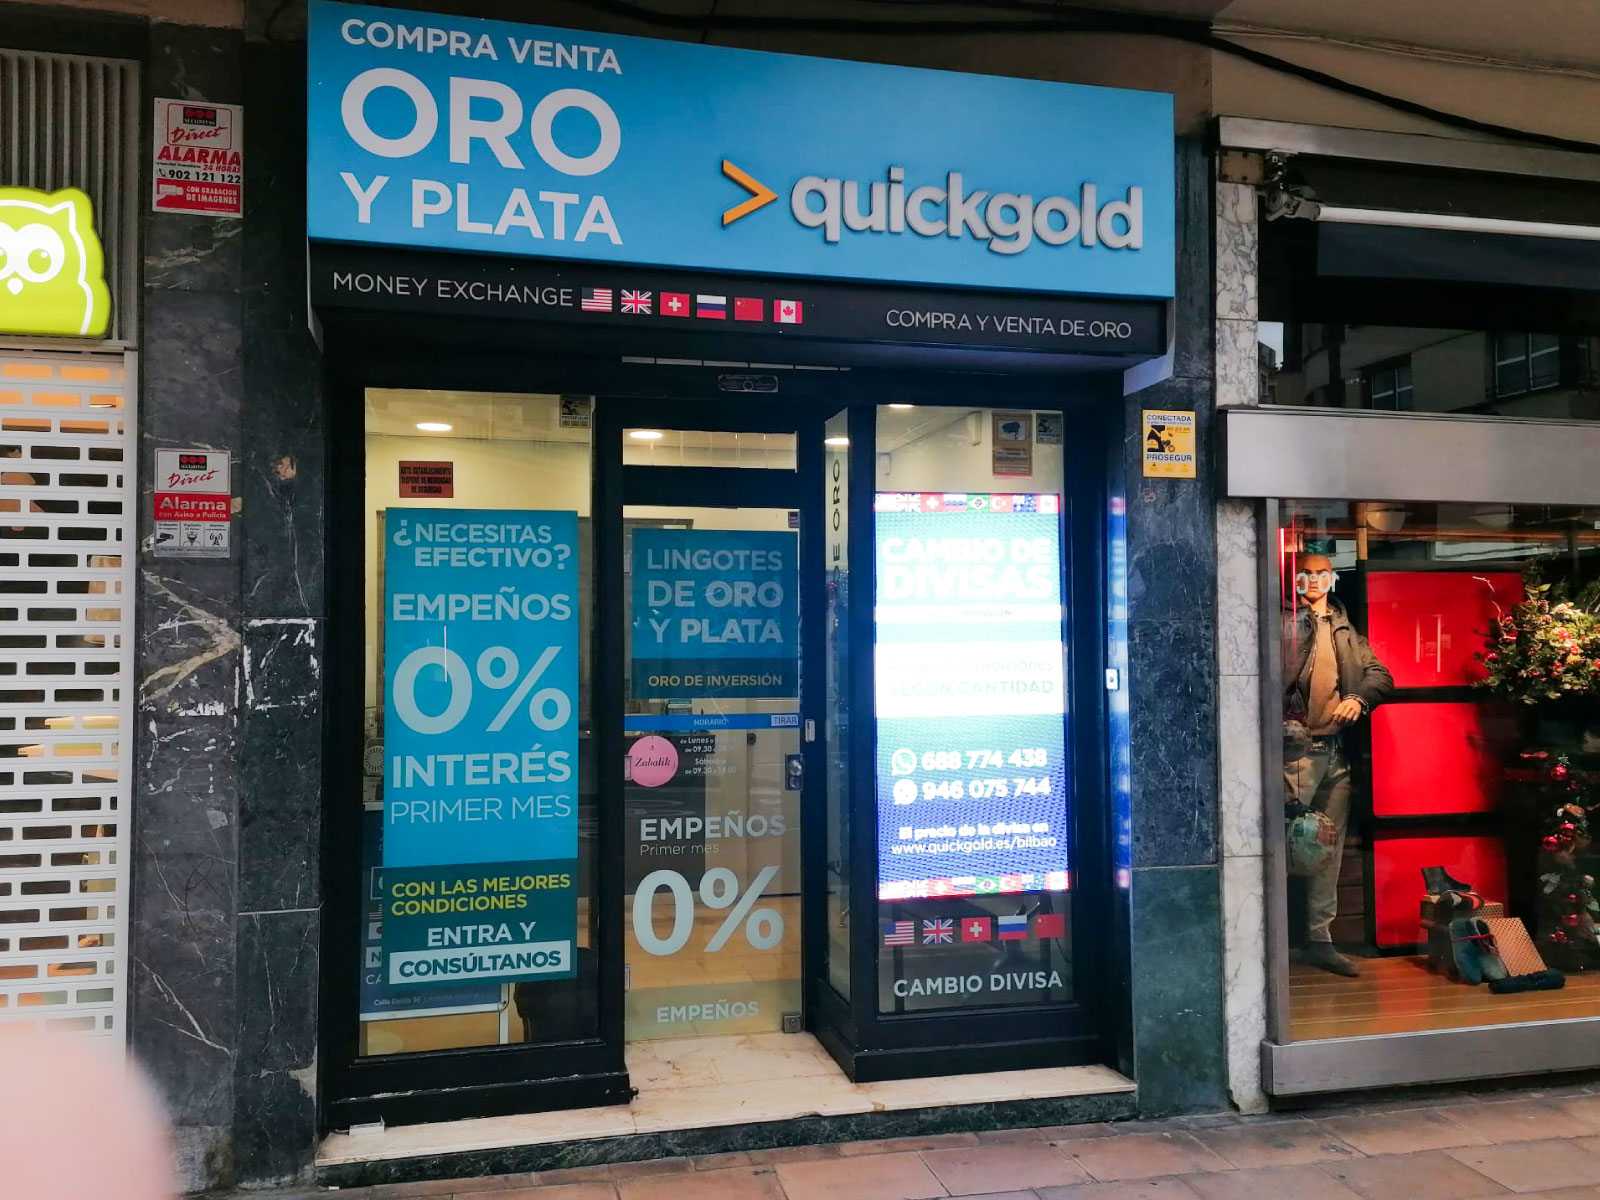 Quickgold Bilbao Compro plata